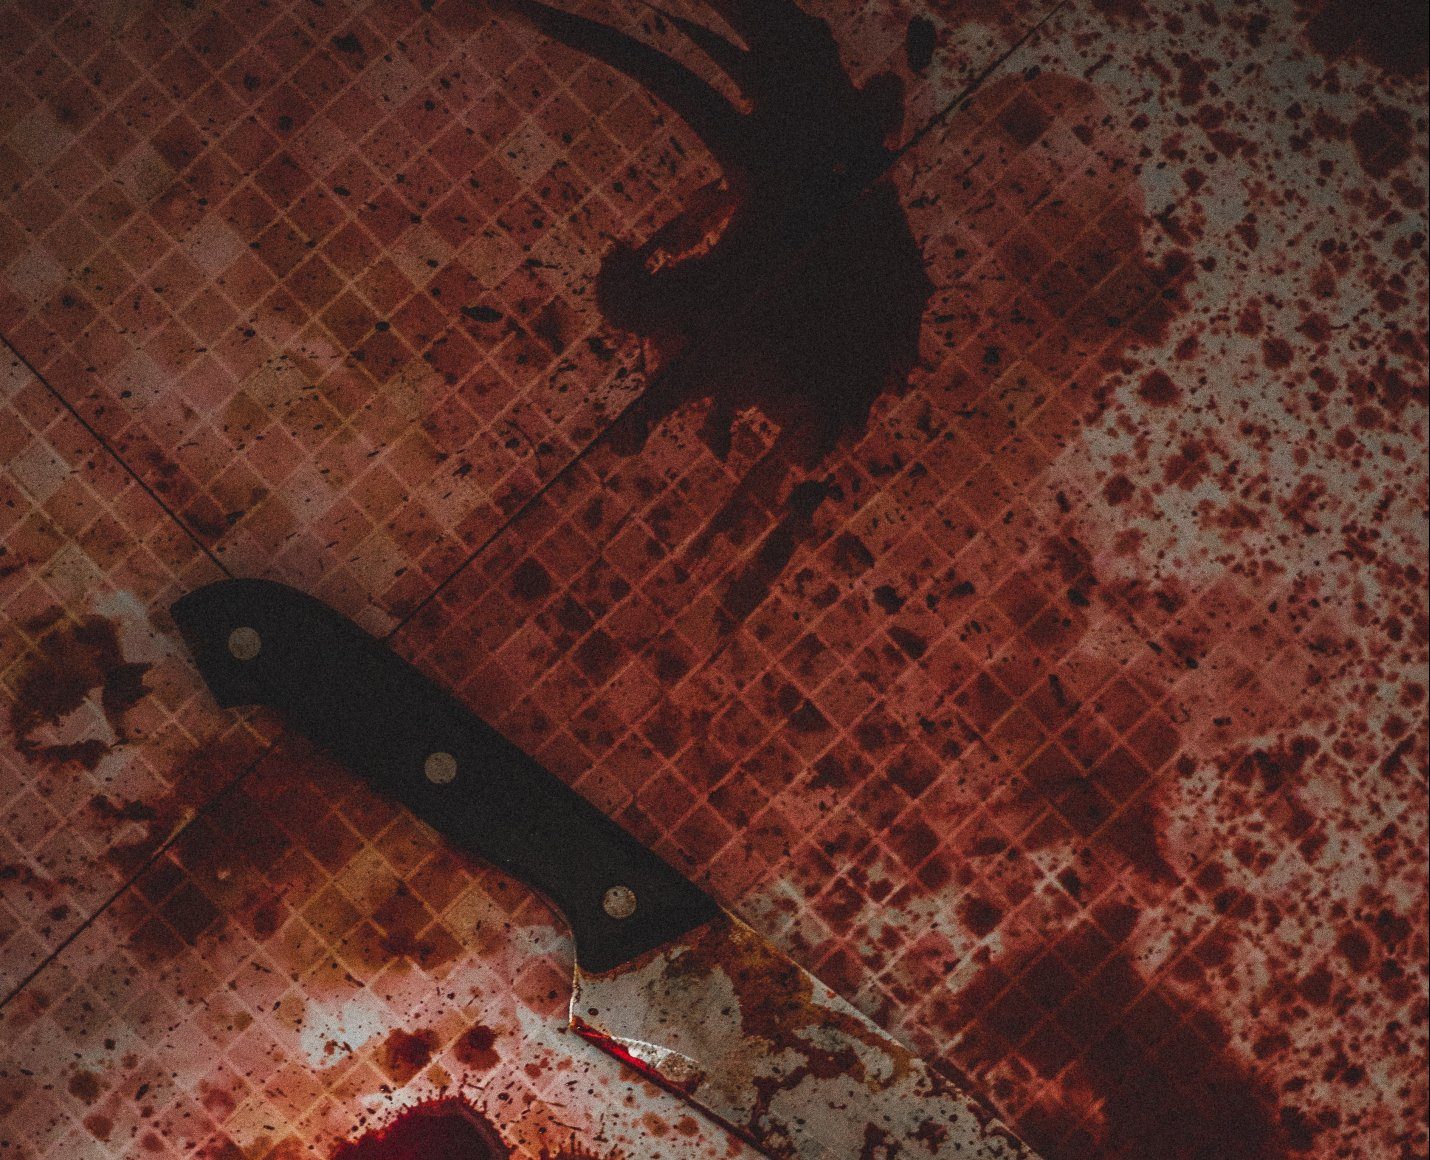 Φονικό στη Νέα Σμύρνη: Συχνοί οι καβγάδες μεταξύ των αδερφών - Η επίθεση με σιδερογροθιά και μαχαίρι